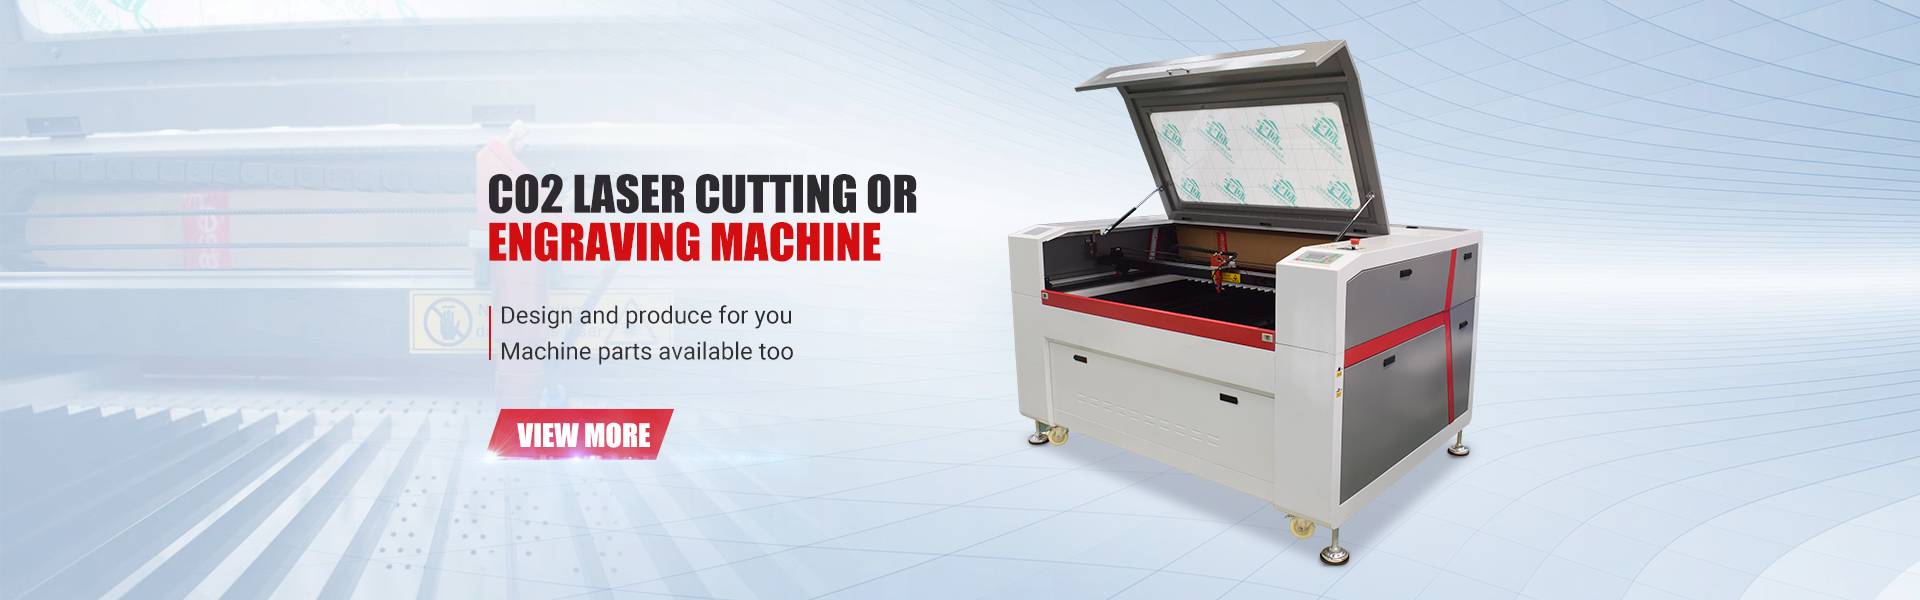 Umdayisi ophezulu we-CNC Metal Cutting Engraving Carving Machine 6090